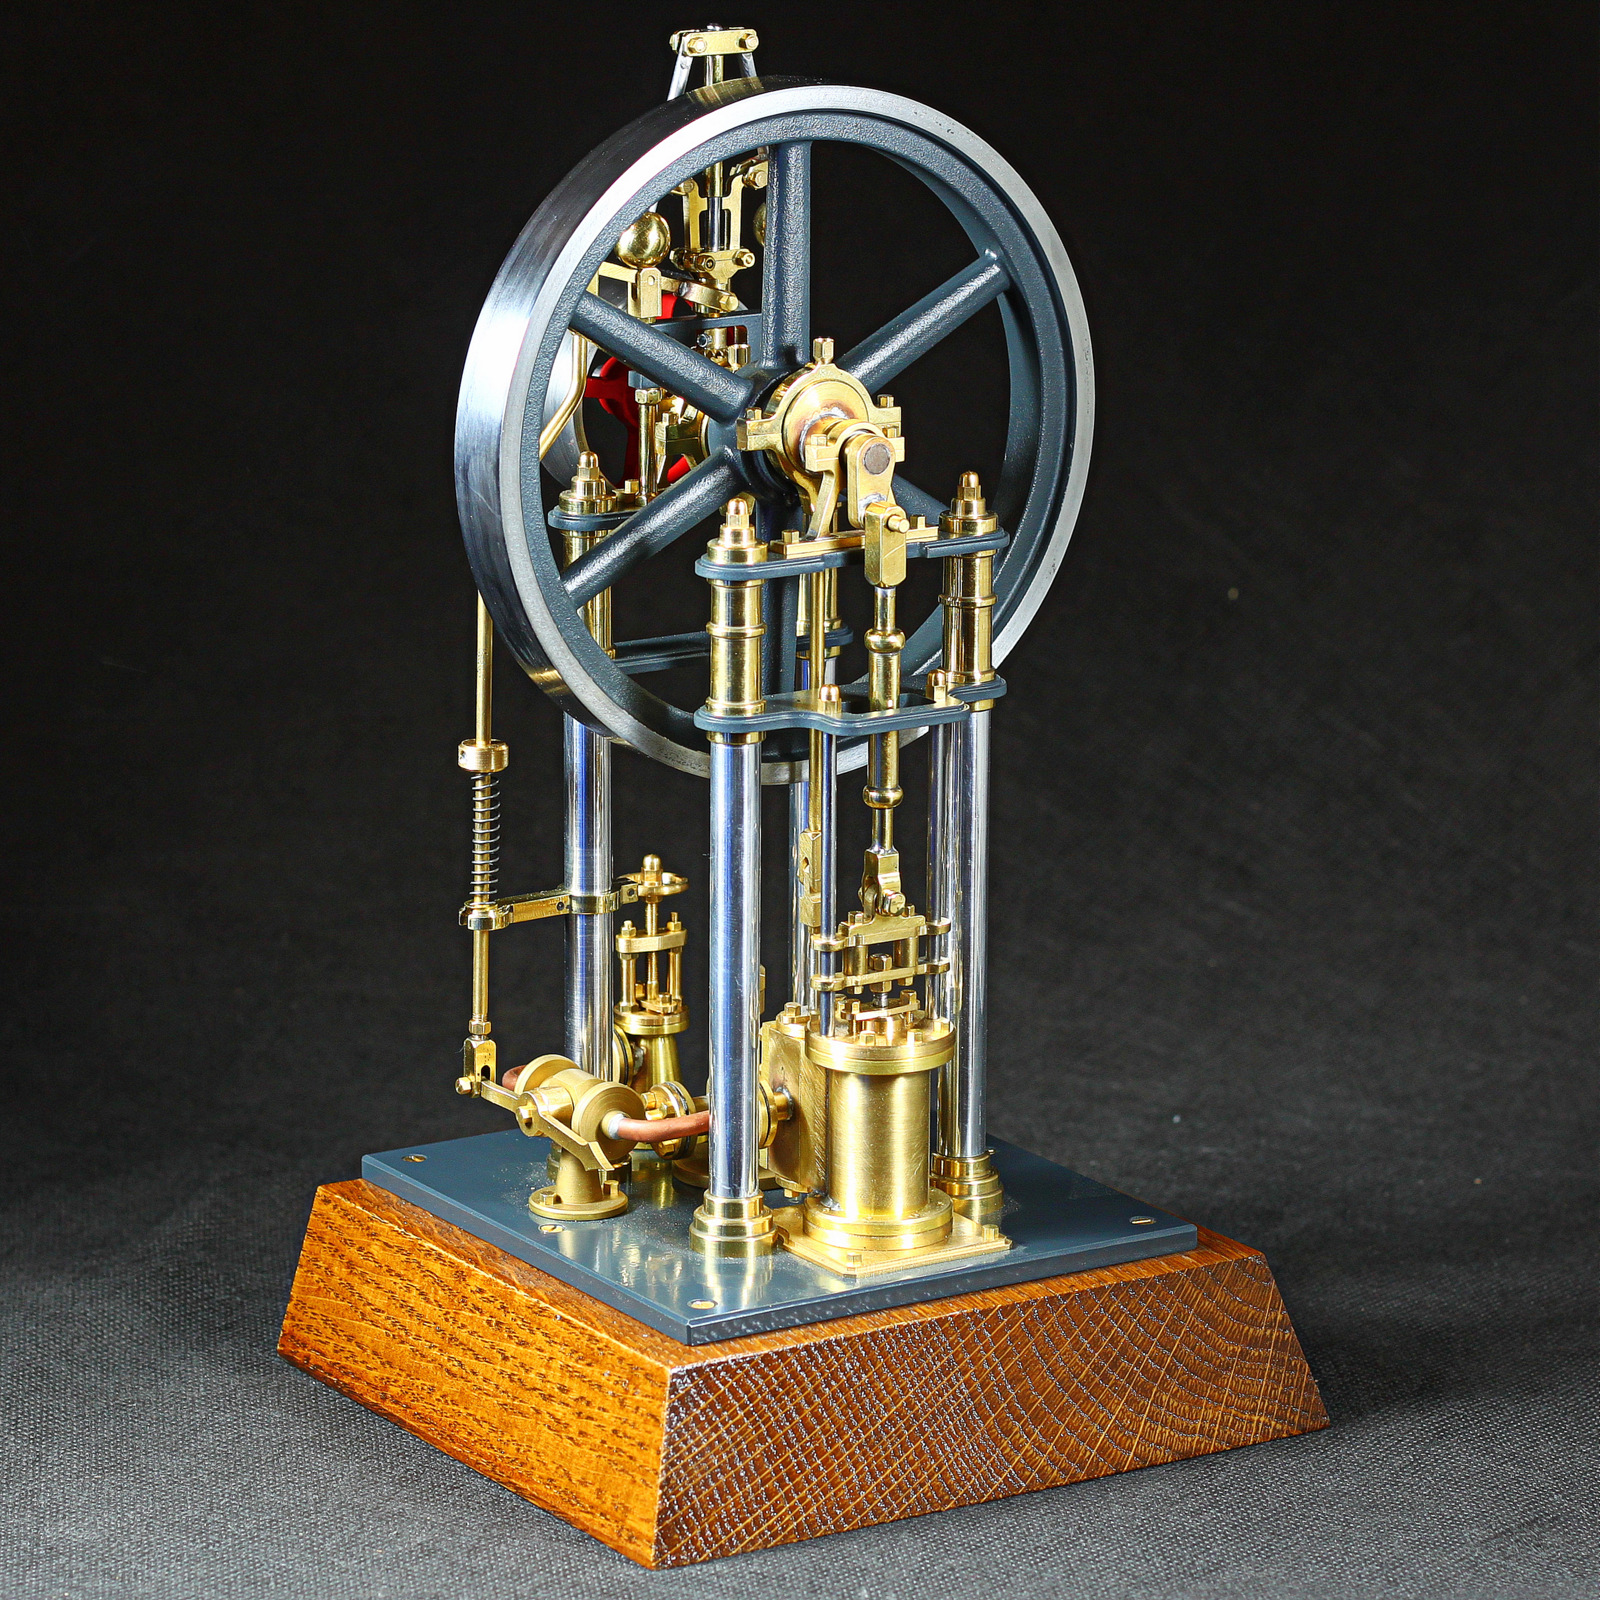 Stehende Dampfmaschine von Bengs Modellbau